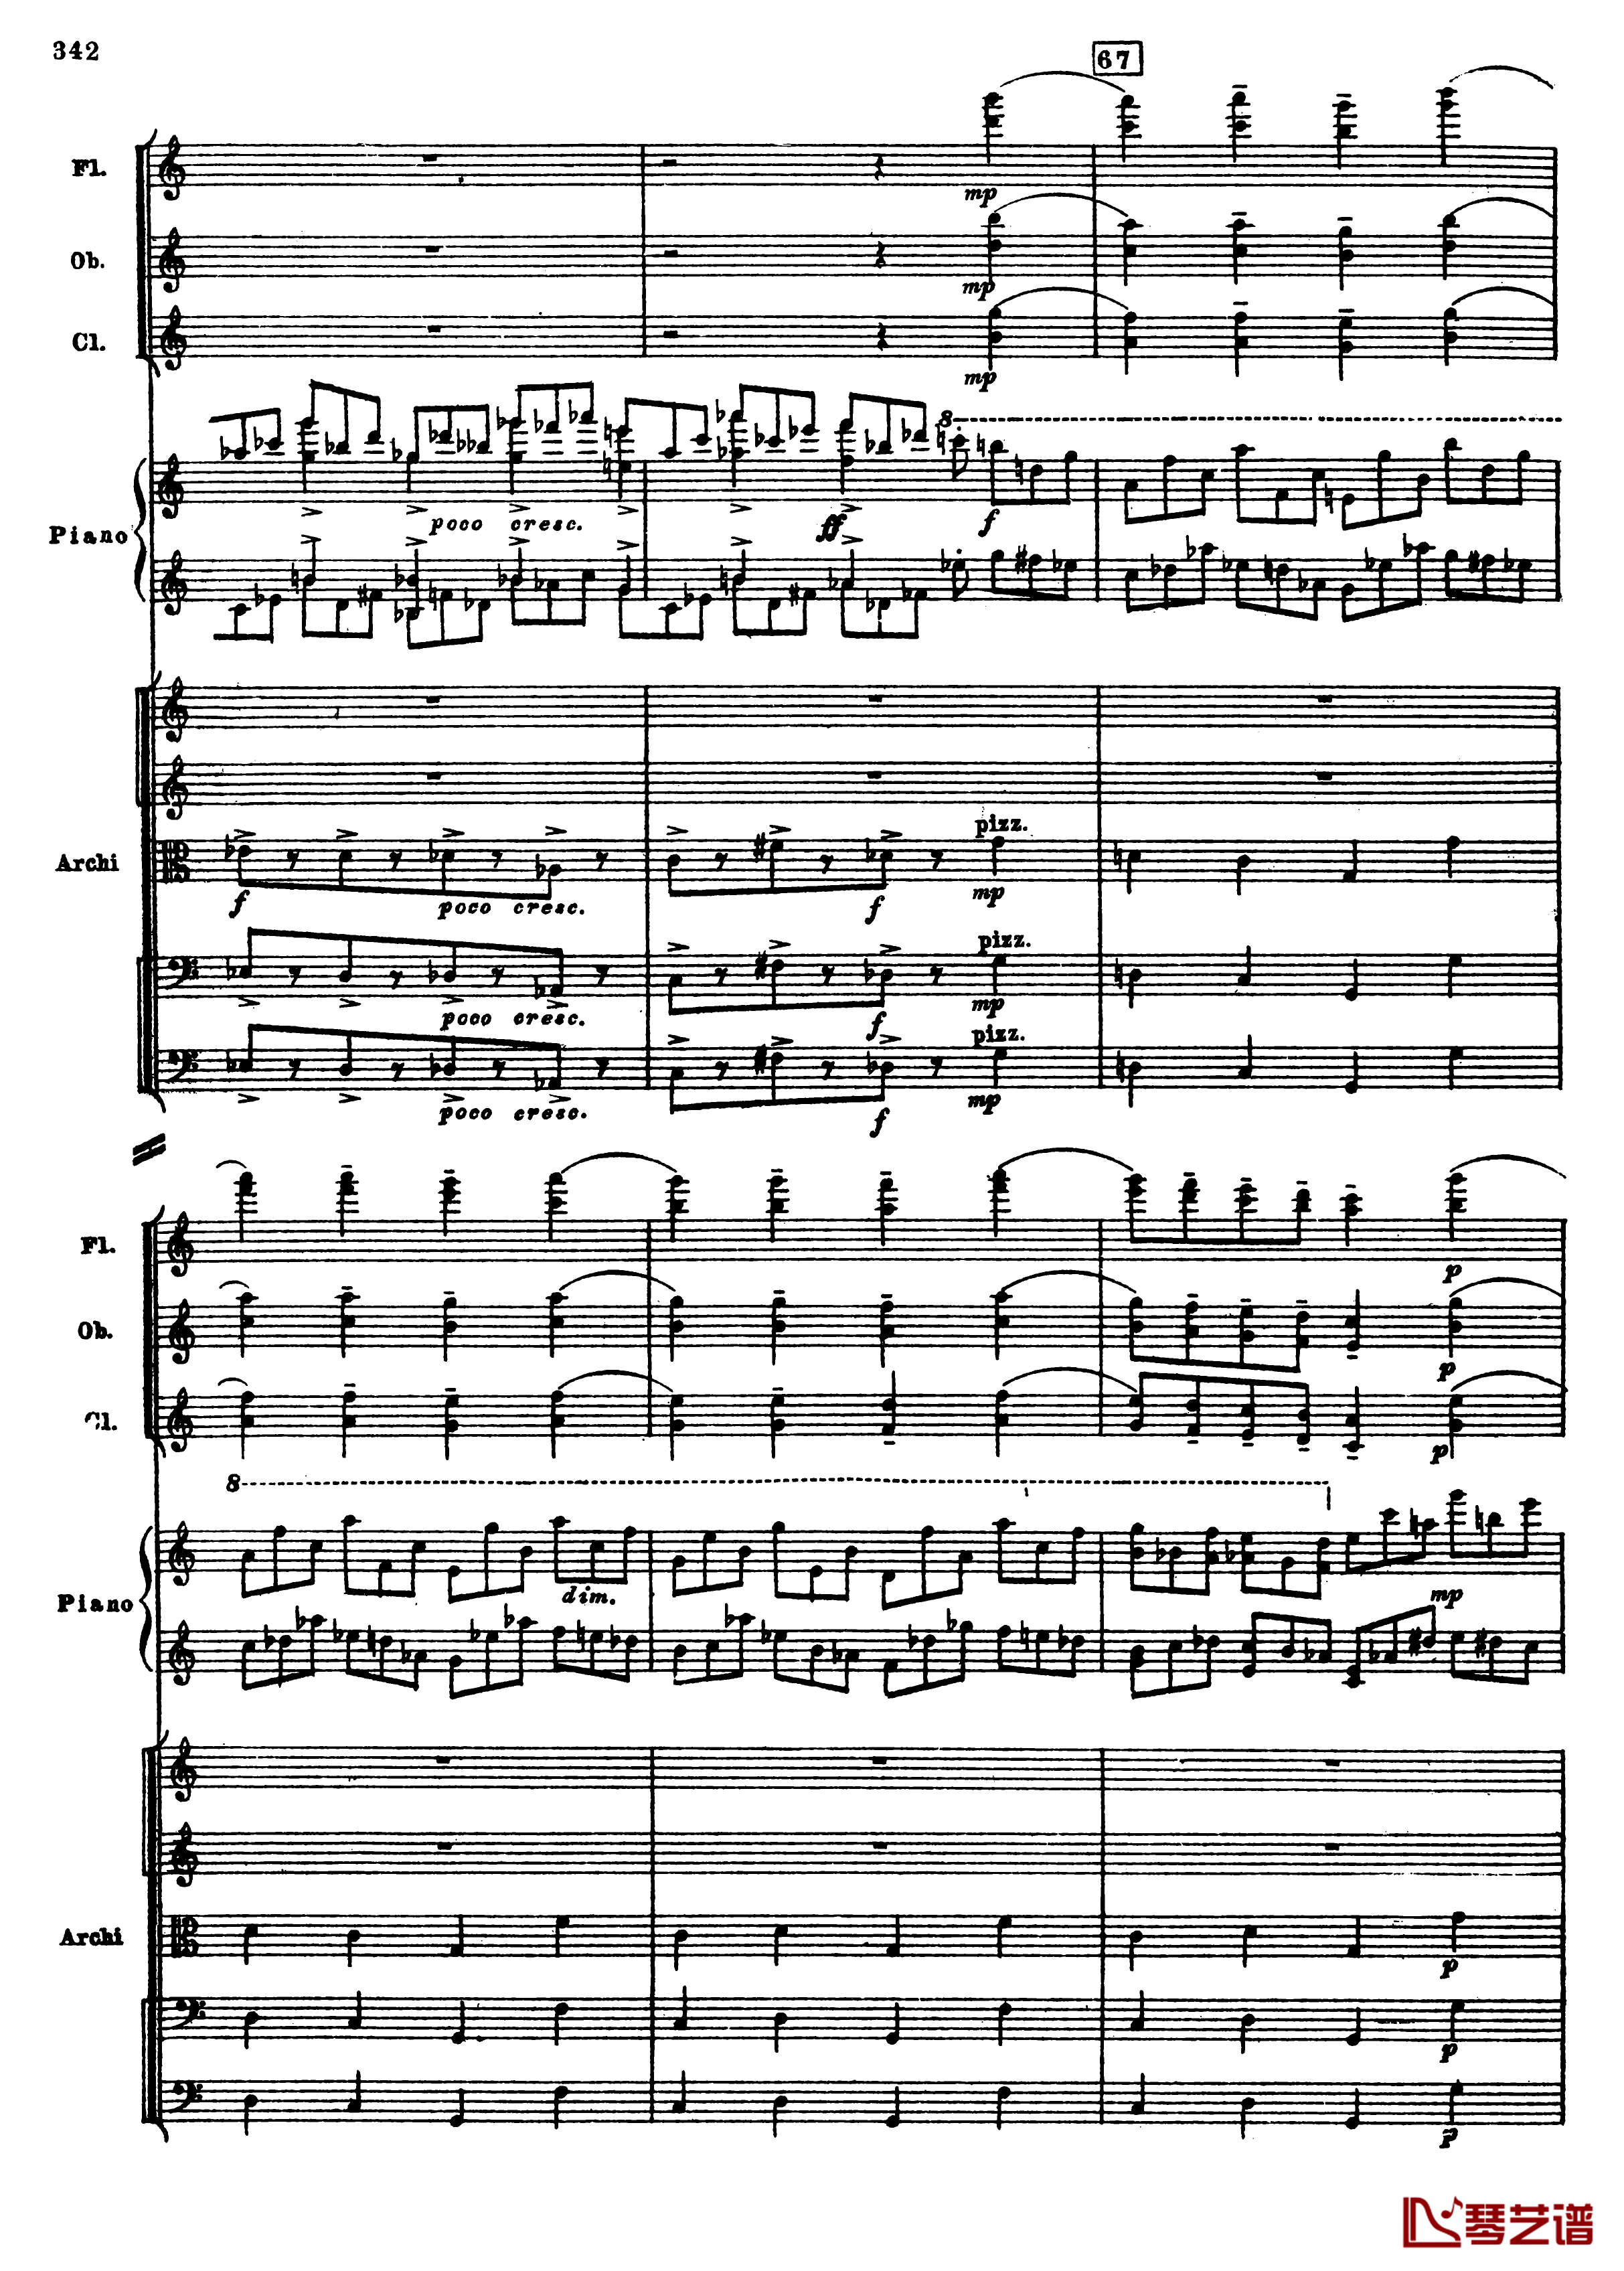 普罗科菲耶夫第三钢琴协奏曲钢琴谱-总谱-普罗科非耶夫74